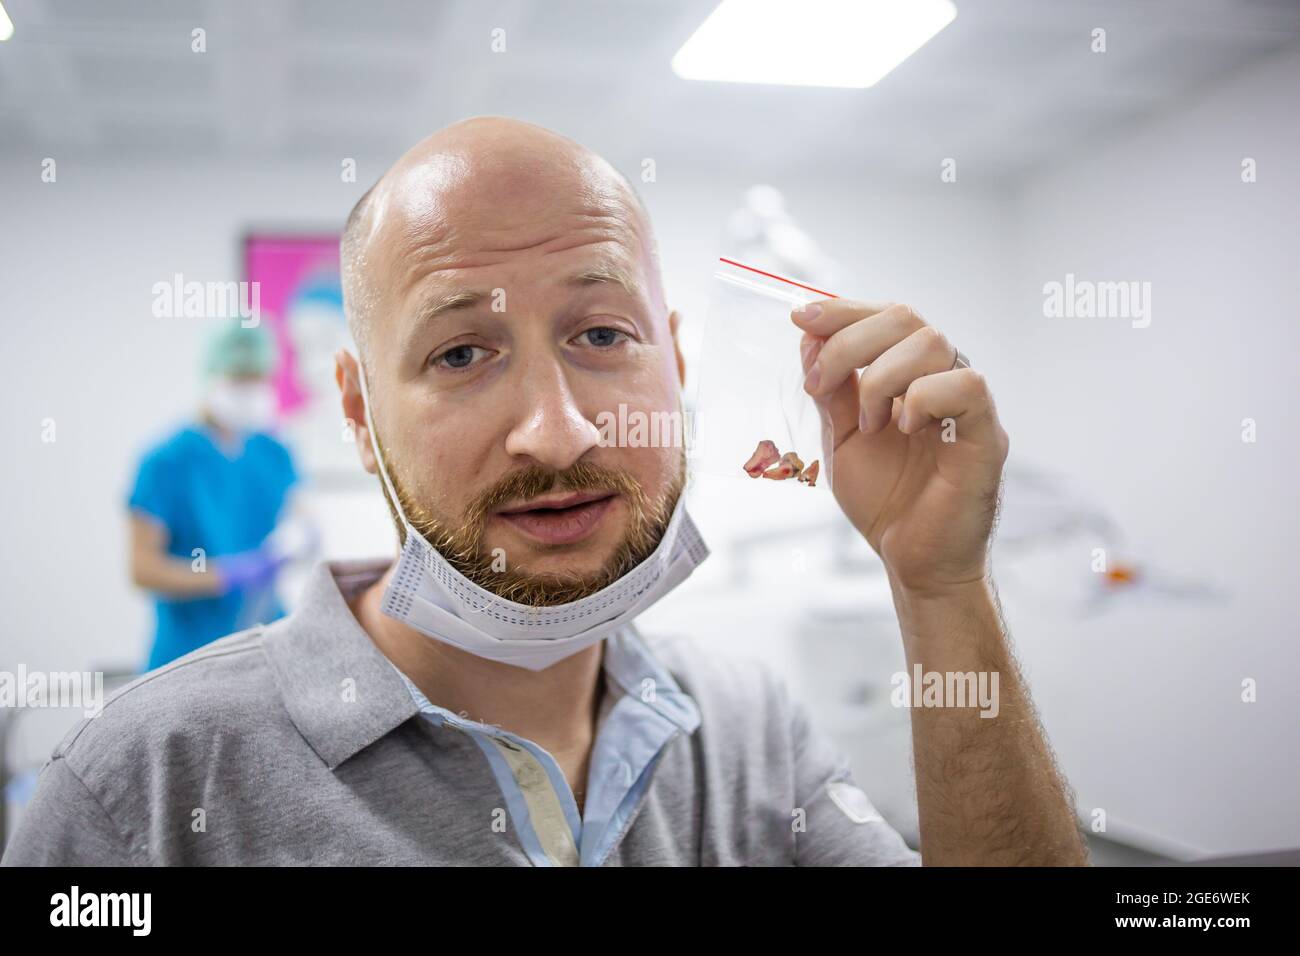 Un homme caucasien montrant ses dents dans la main après une opération d'extraction de dent de sagesse dans un hôpital dentaire. Banque D'Images